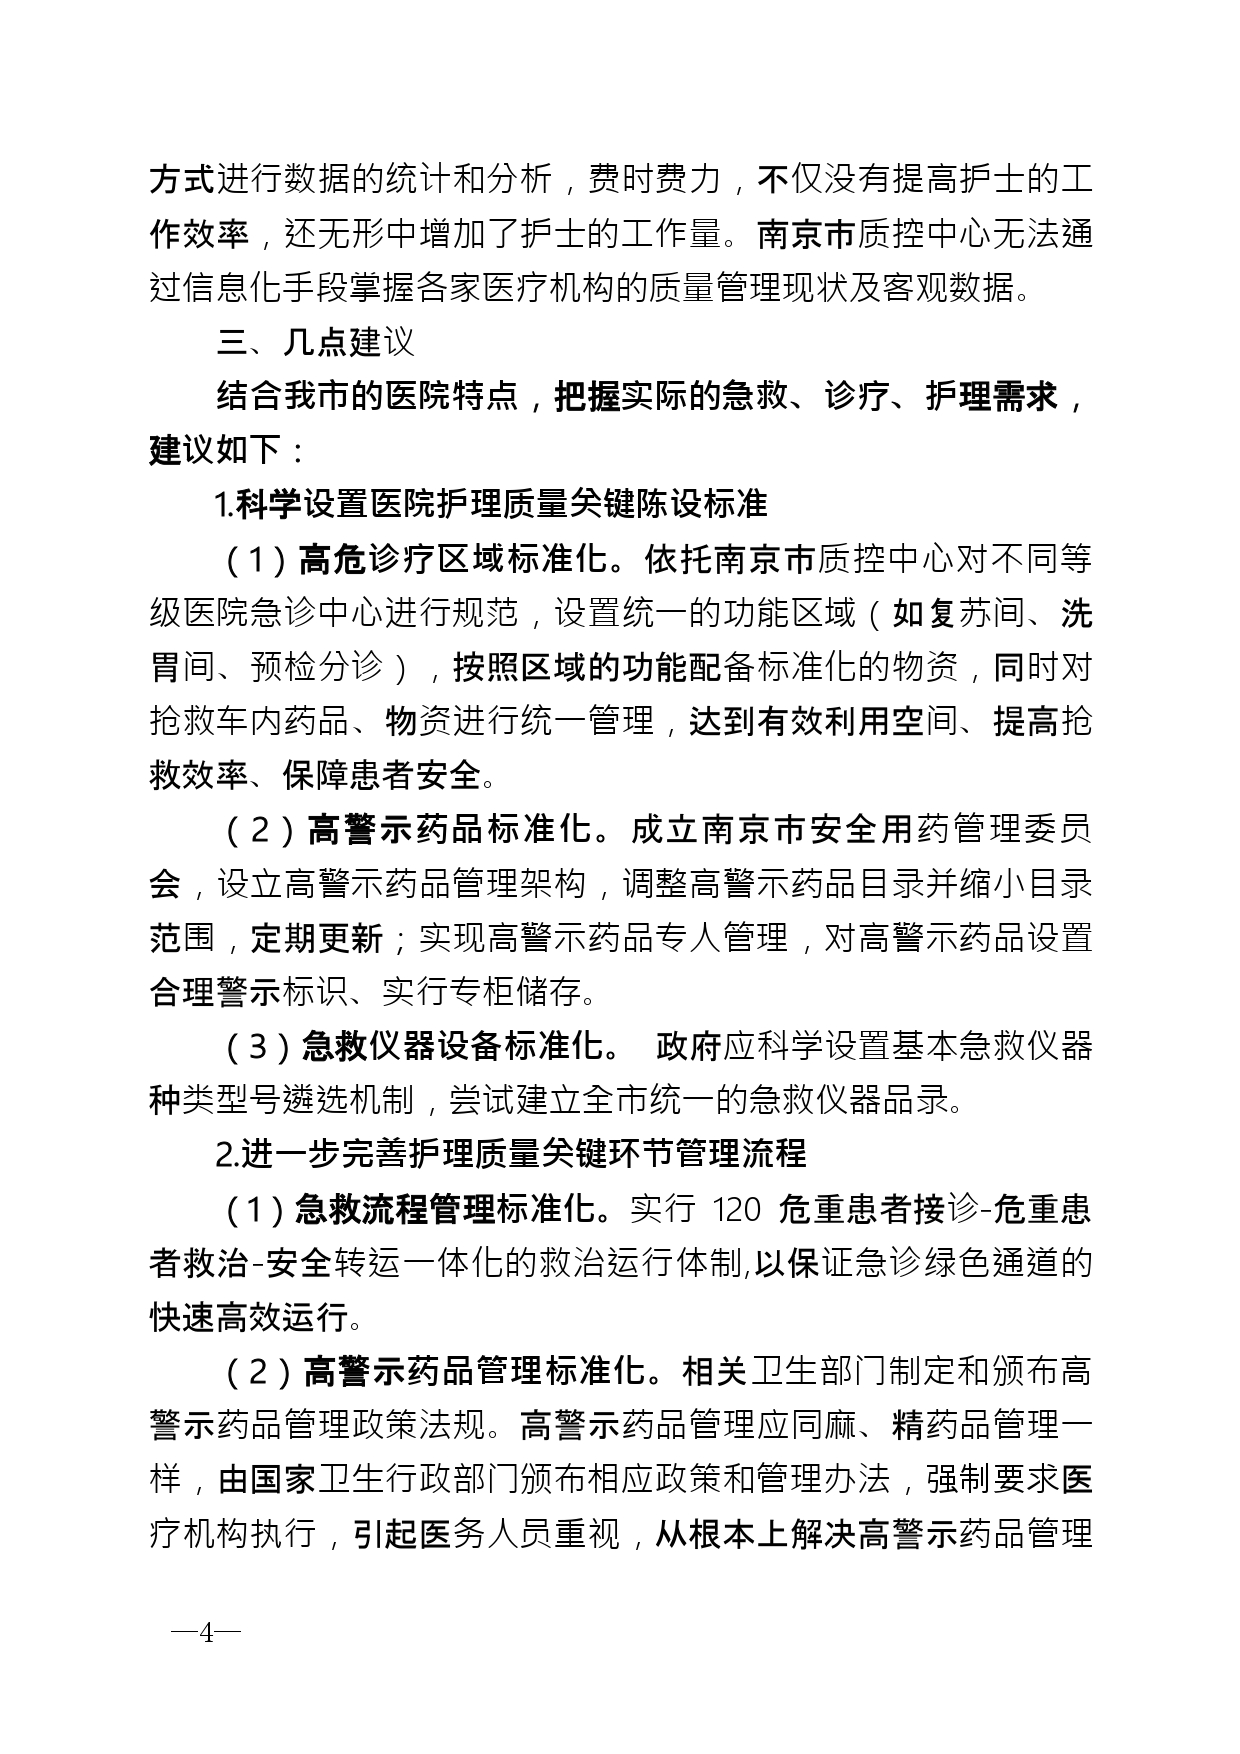 2021年第2期（关于构建南京地区护理体系的建议）_page-0004.jpg